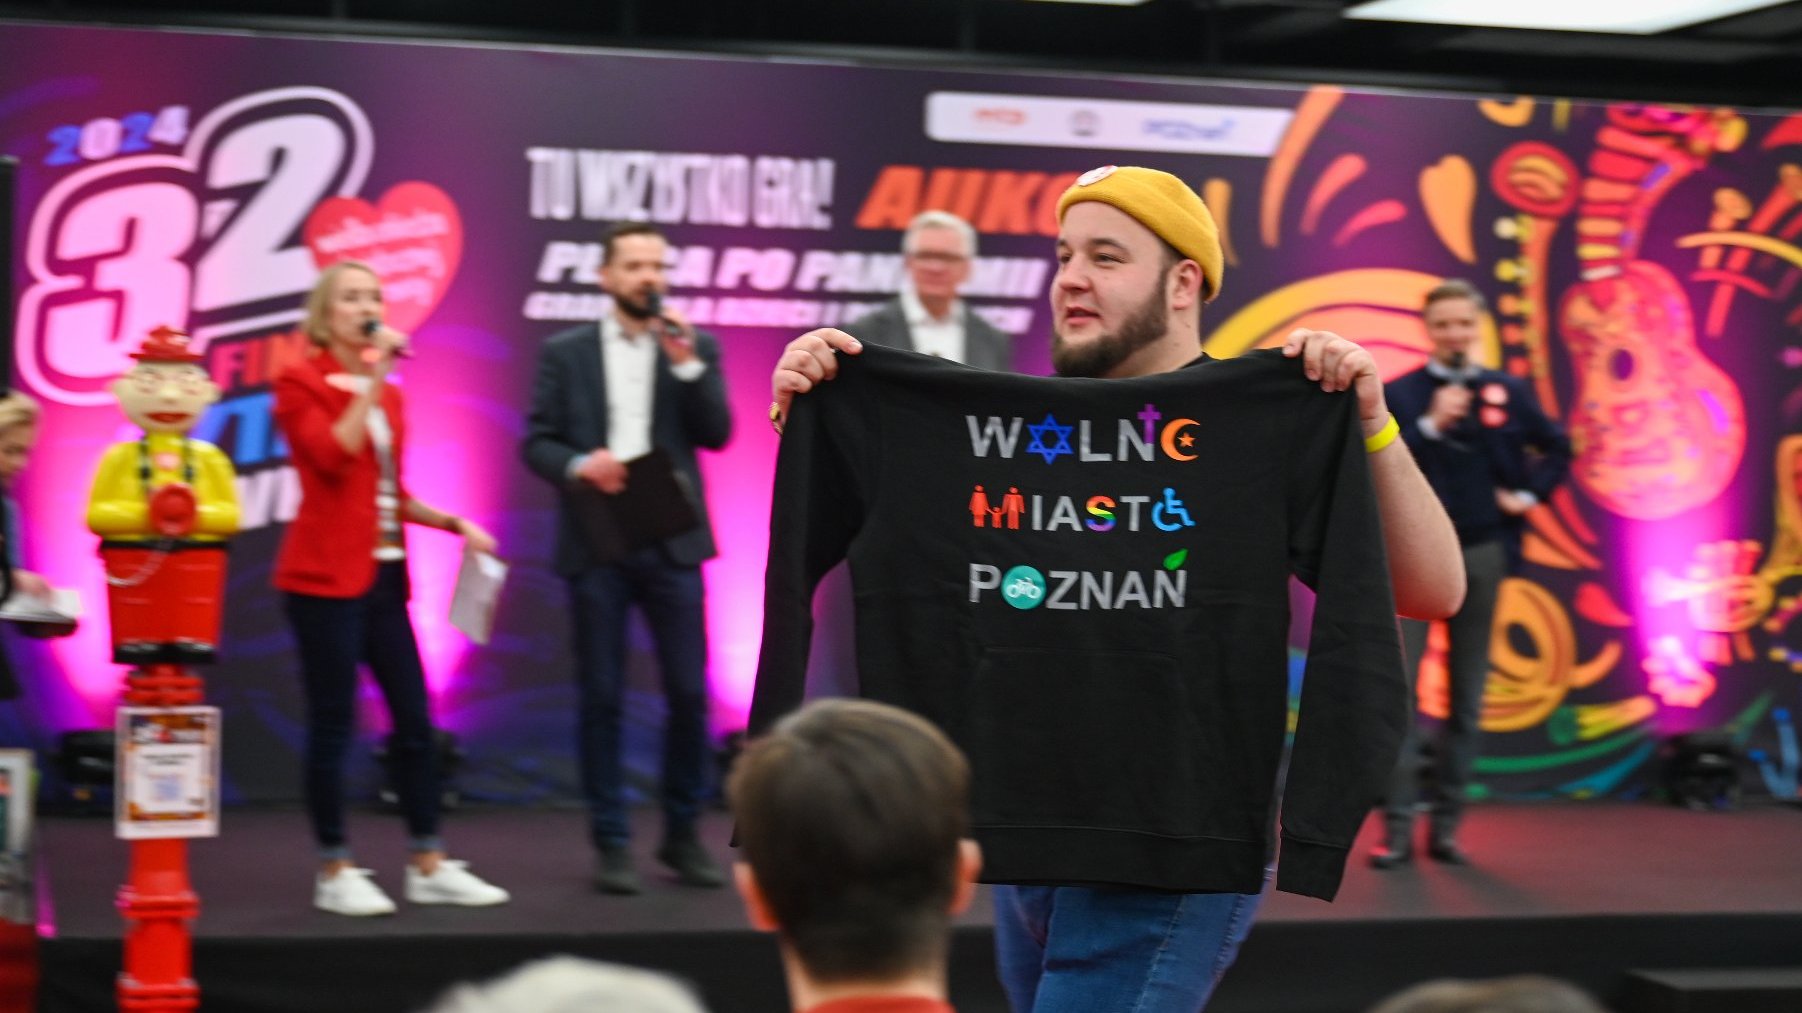 Osoba, która wylicytowała i prezentuje bluzę "Wolne Miasto Poznań"